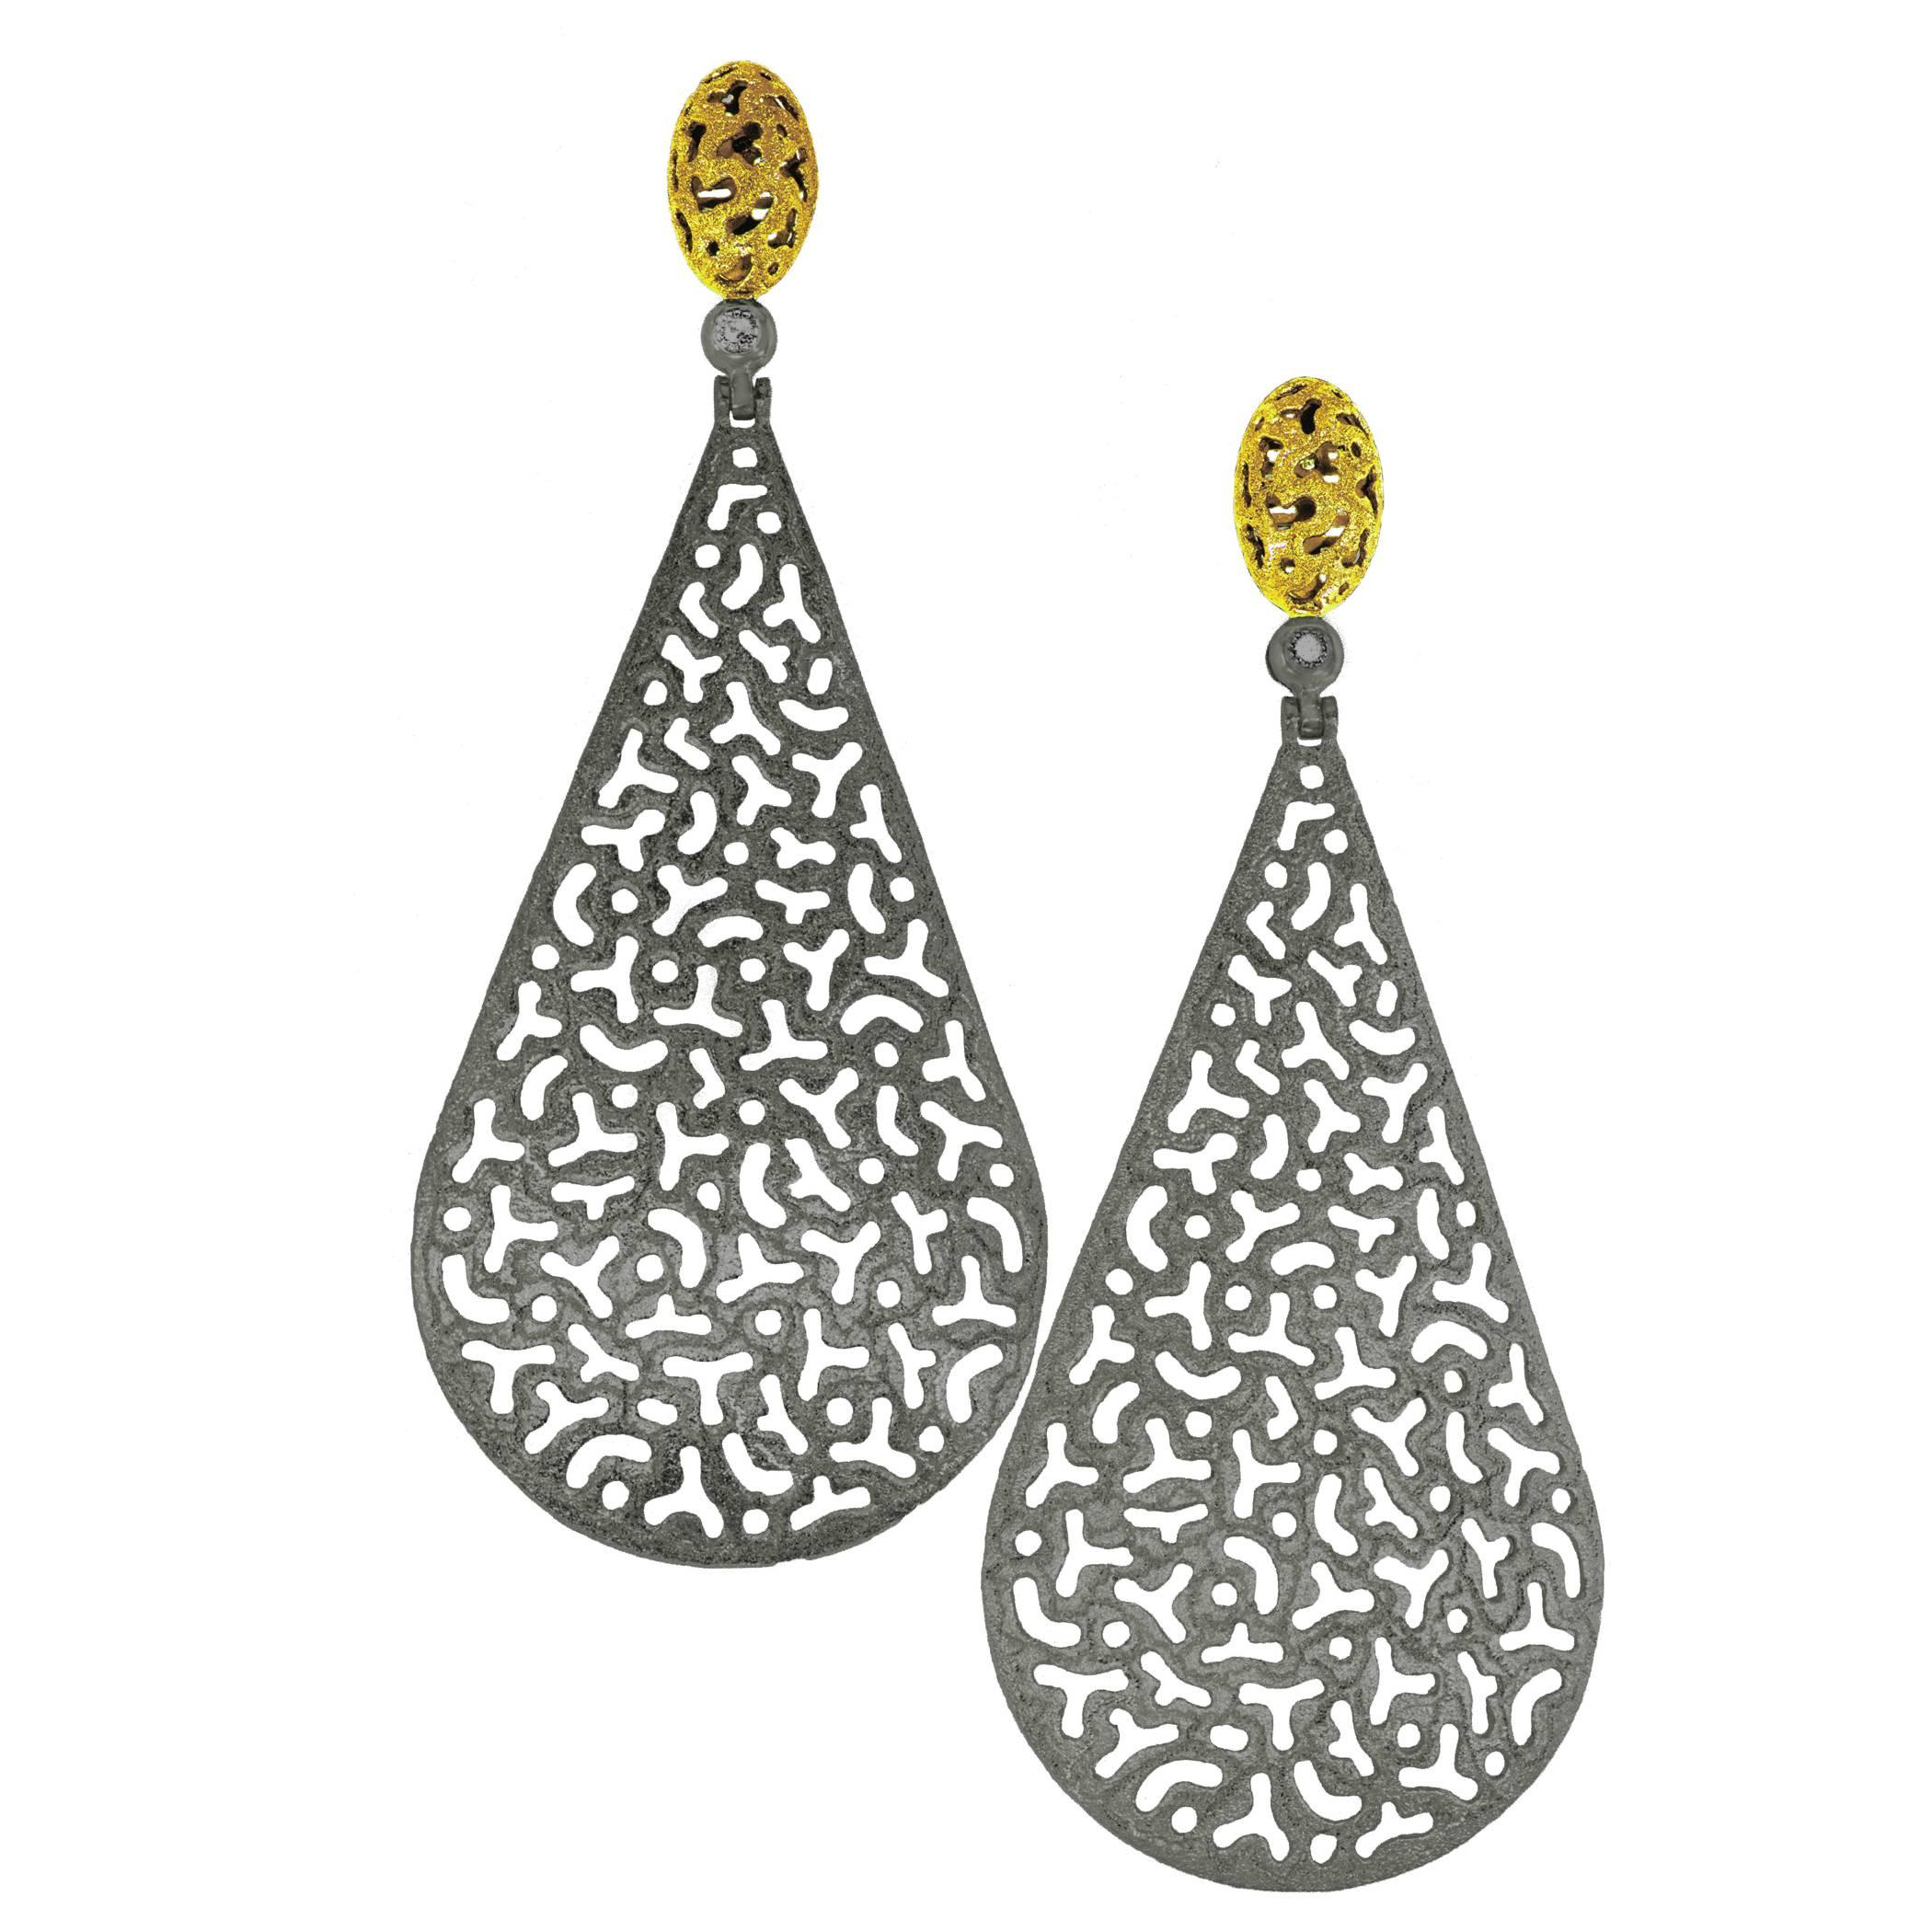 Drop Dangle Gold Earrings w Textured Open Work by Alex Soldier Ltd Ed Handmade